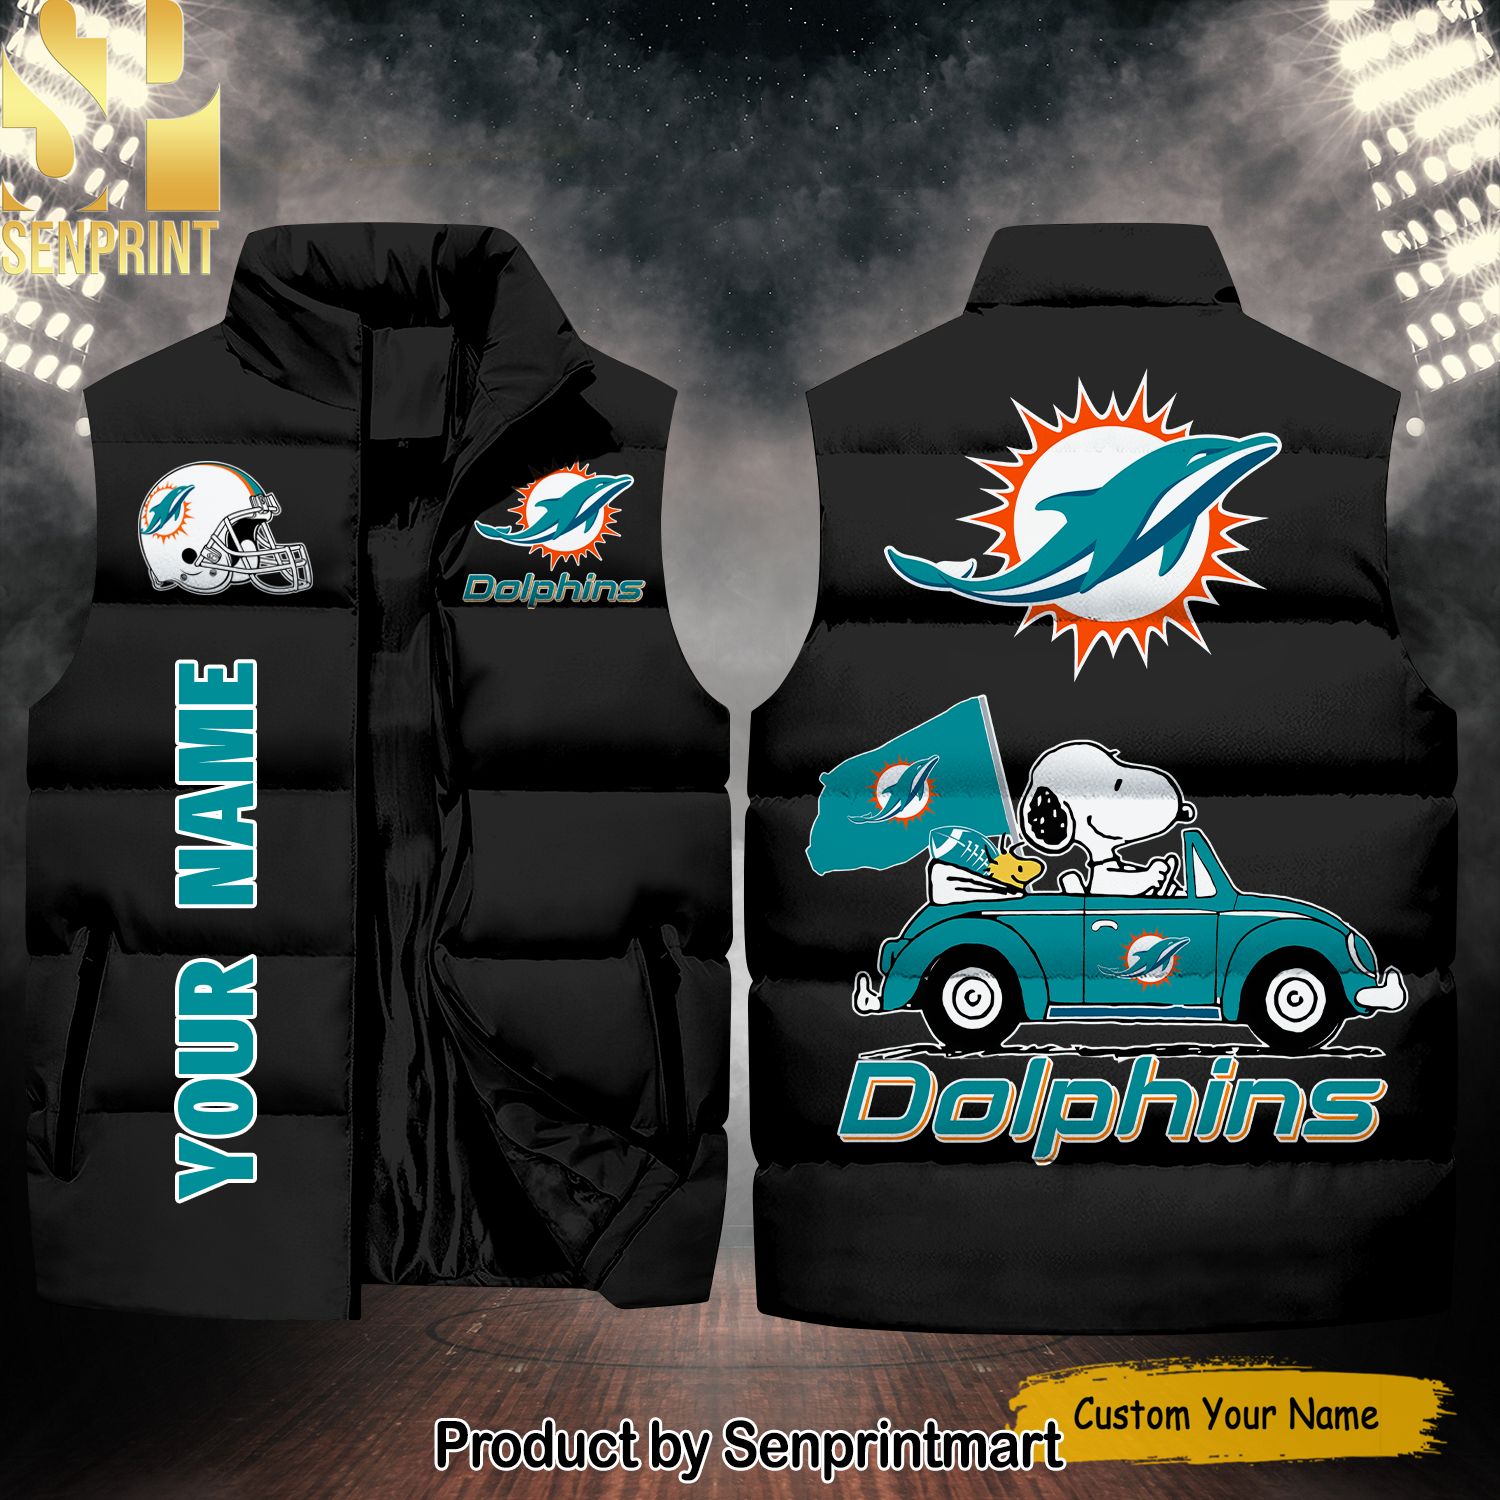 National Football League Miami Dolphins Peanuts Snoopy Hot Version Sleeveless Jacket